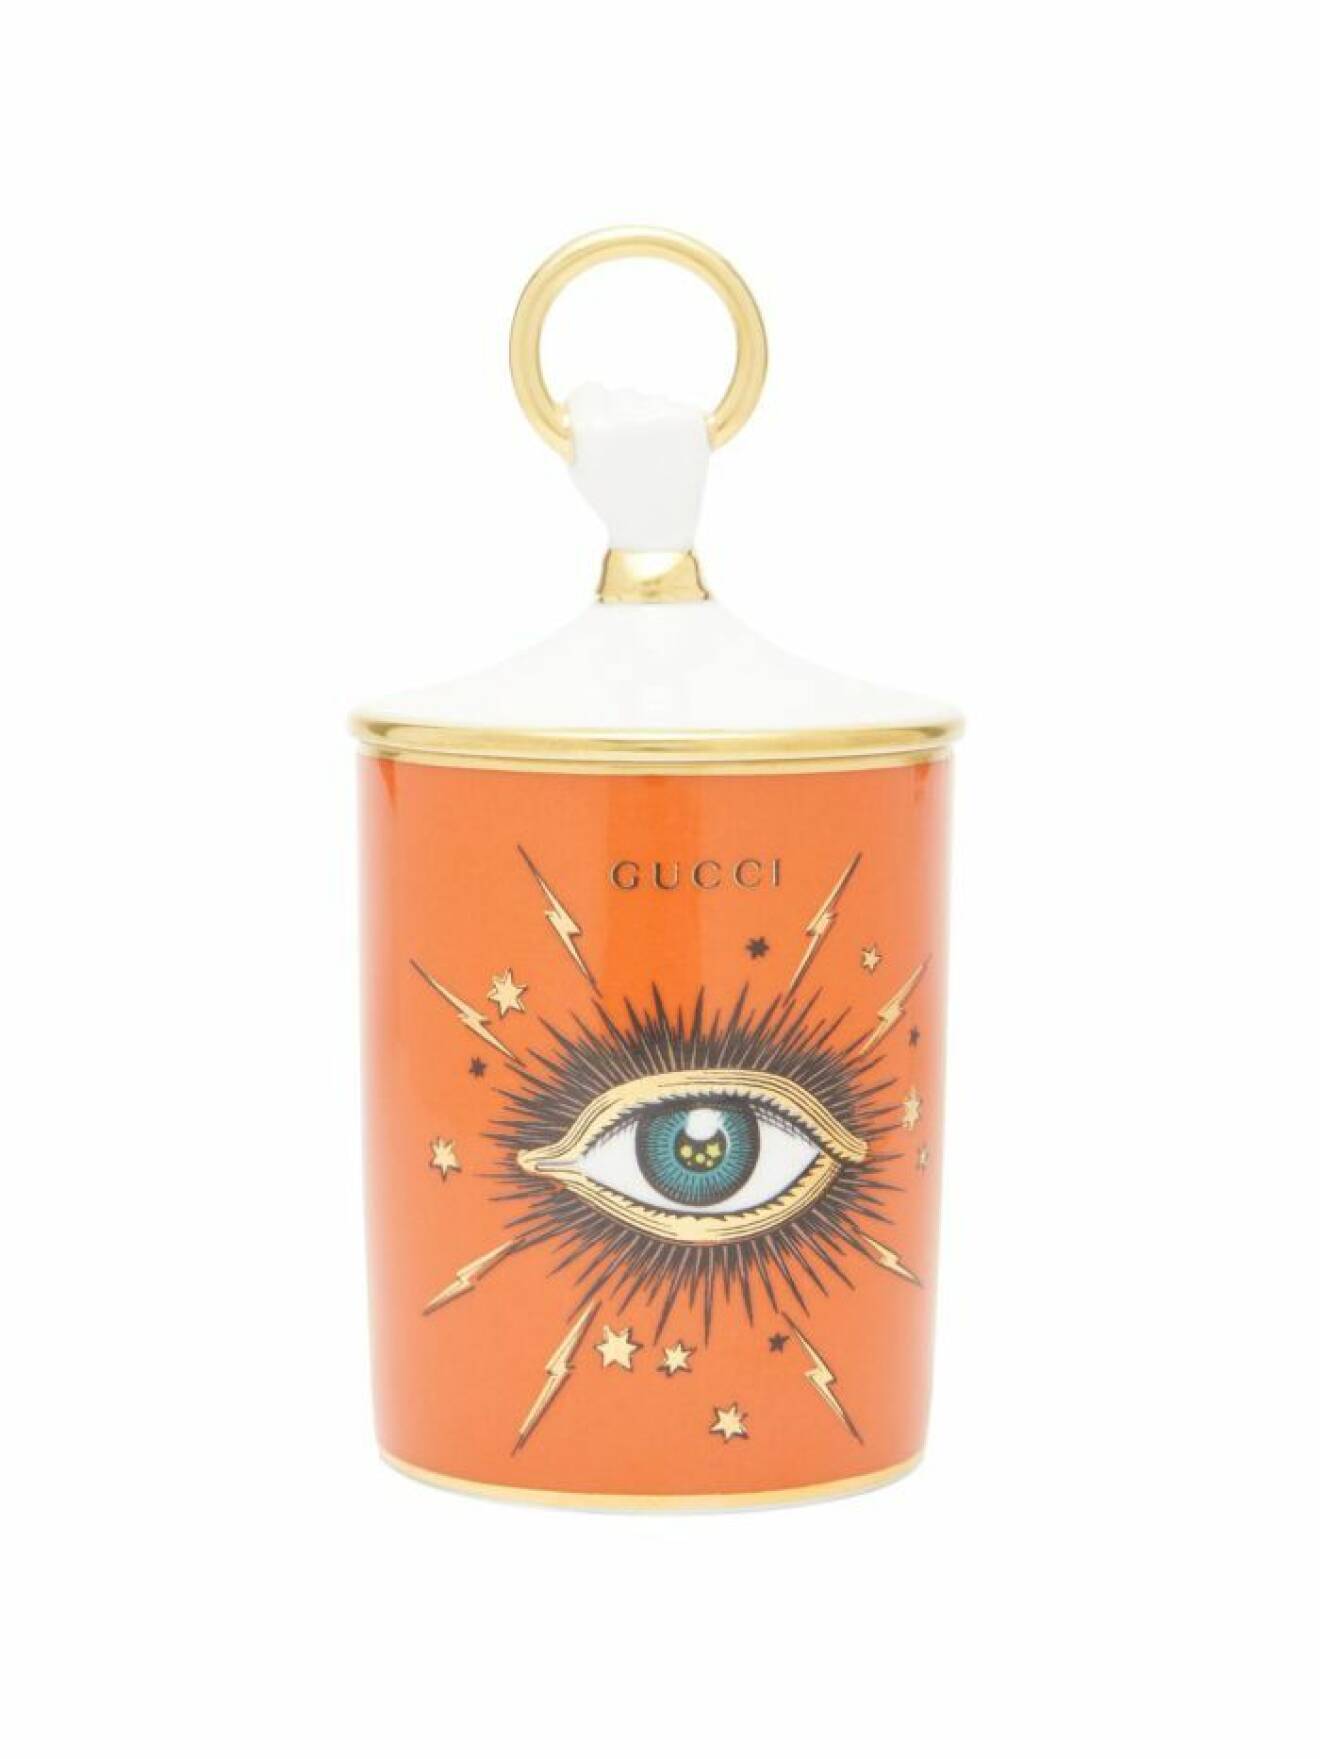 Lyxigt doftljus med en ikonisk ögonsymbol och vackert uttryck i orange från Gucci. 